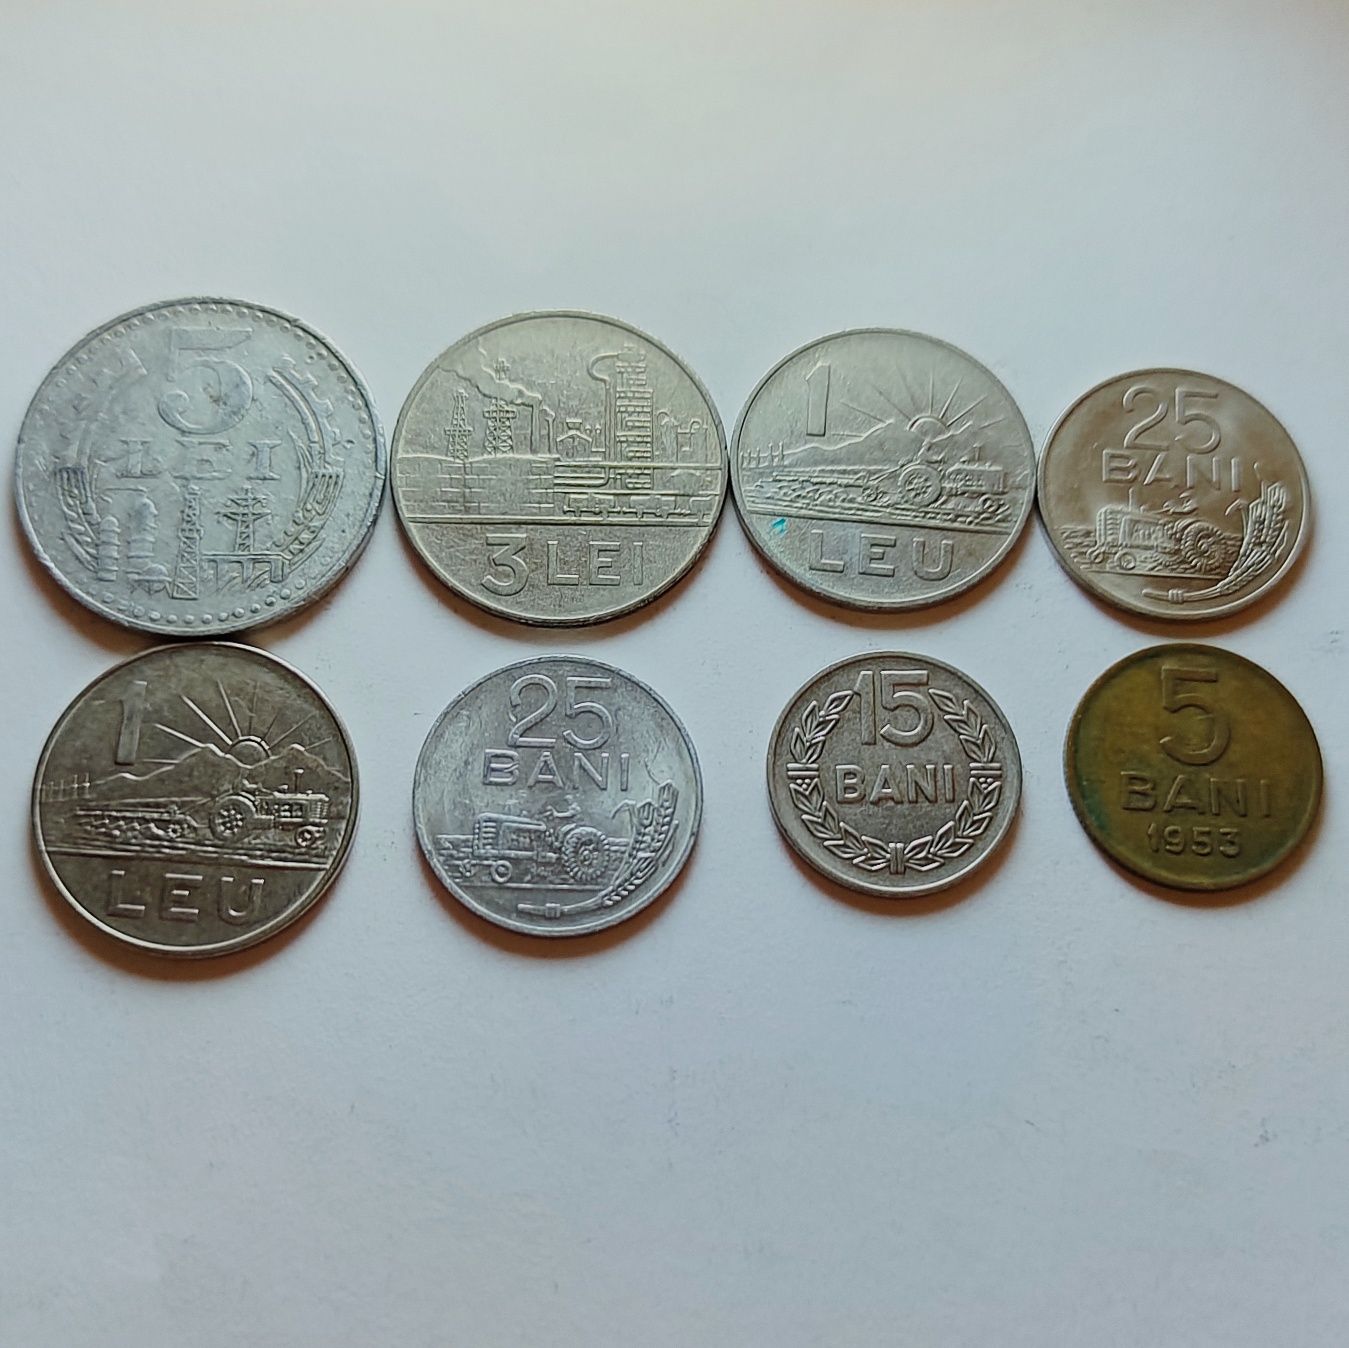 Monede vechi de cinci lei, trei lei, un leu, 25 de bani, 15 si 5 bani